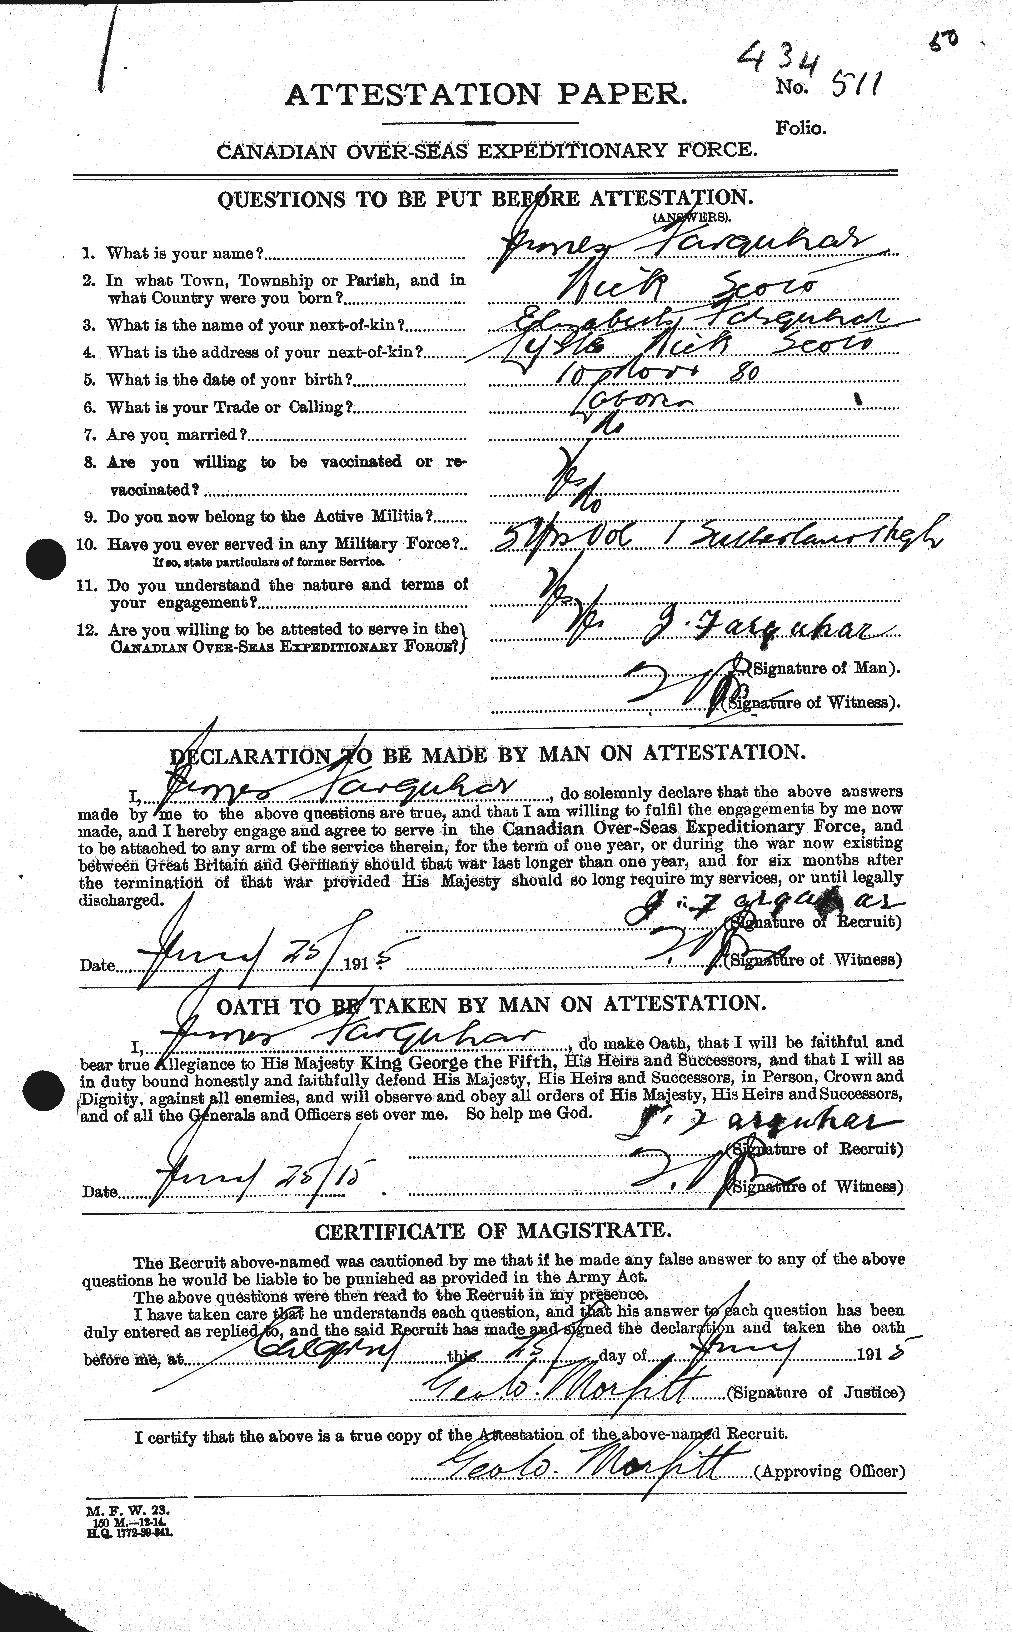 Dossiers du Personnel de la Première Guerre mondiale - CEC 318776a